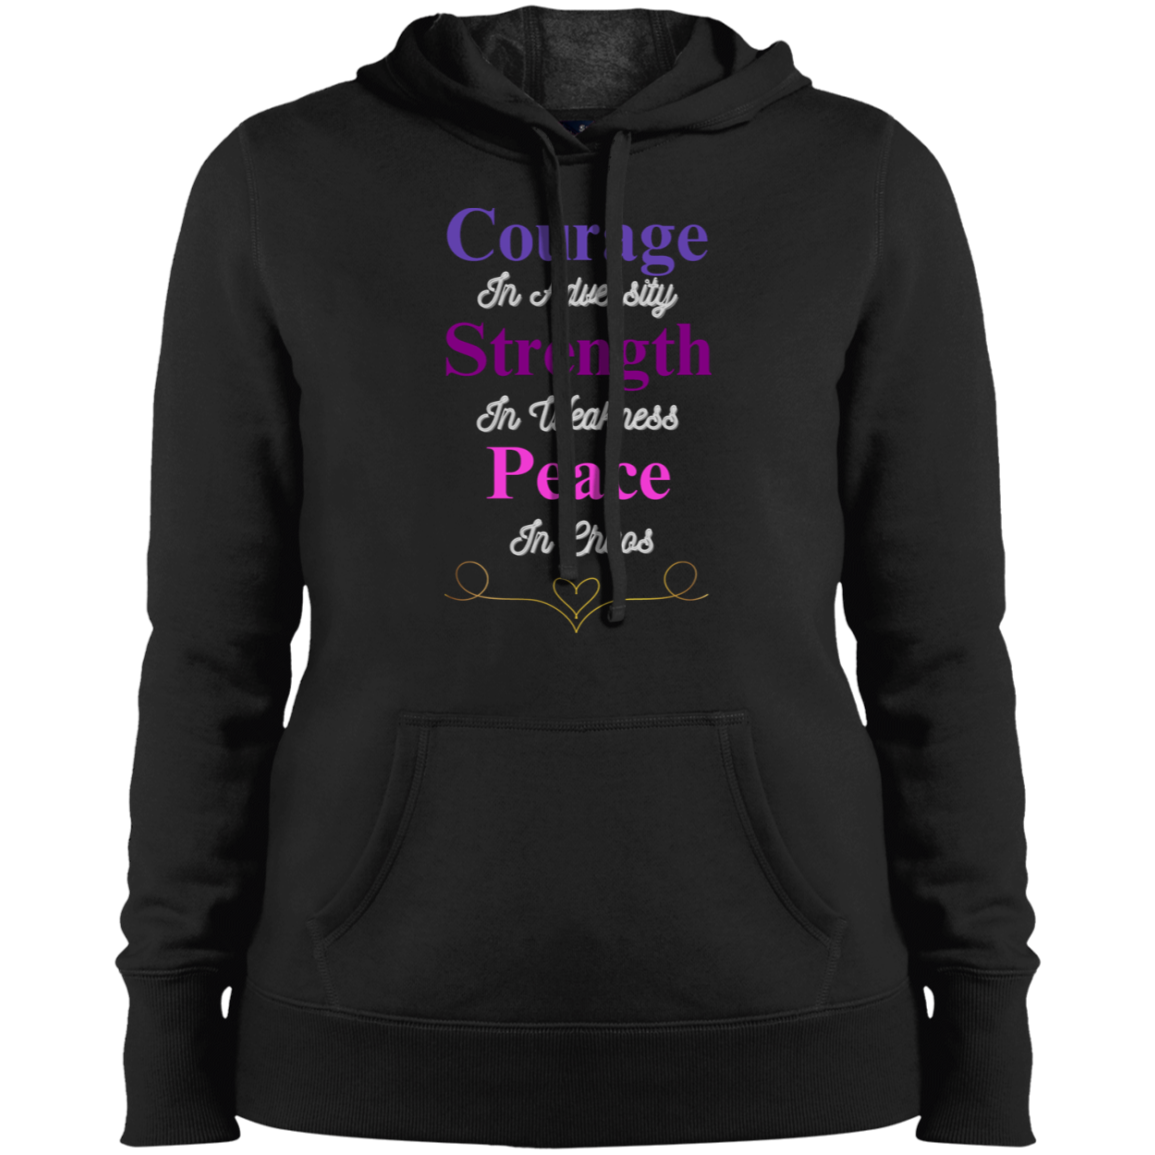 Courage in Adversity Women's Hoodie| Women's Pullover| Women's Sweatshirt